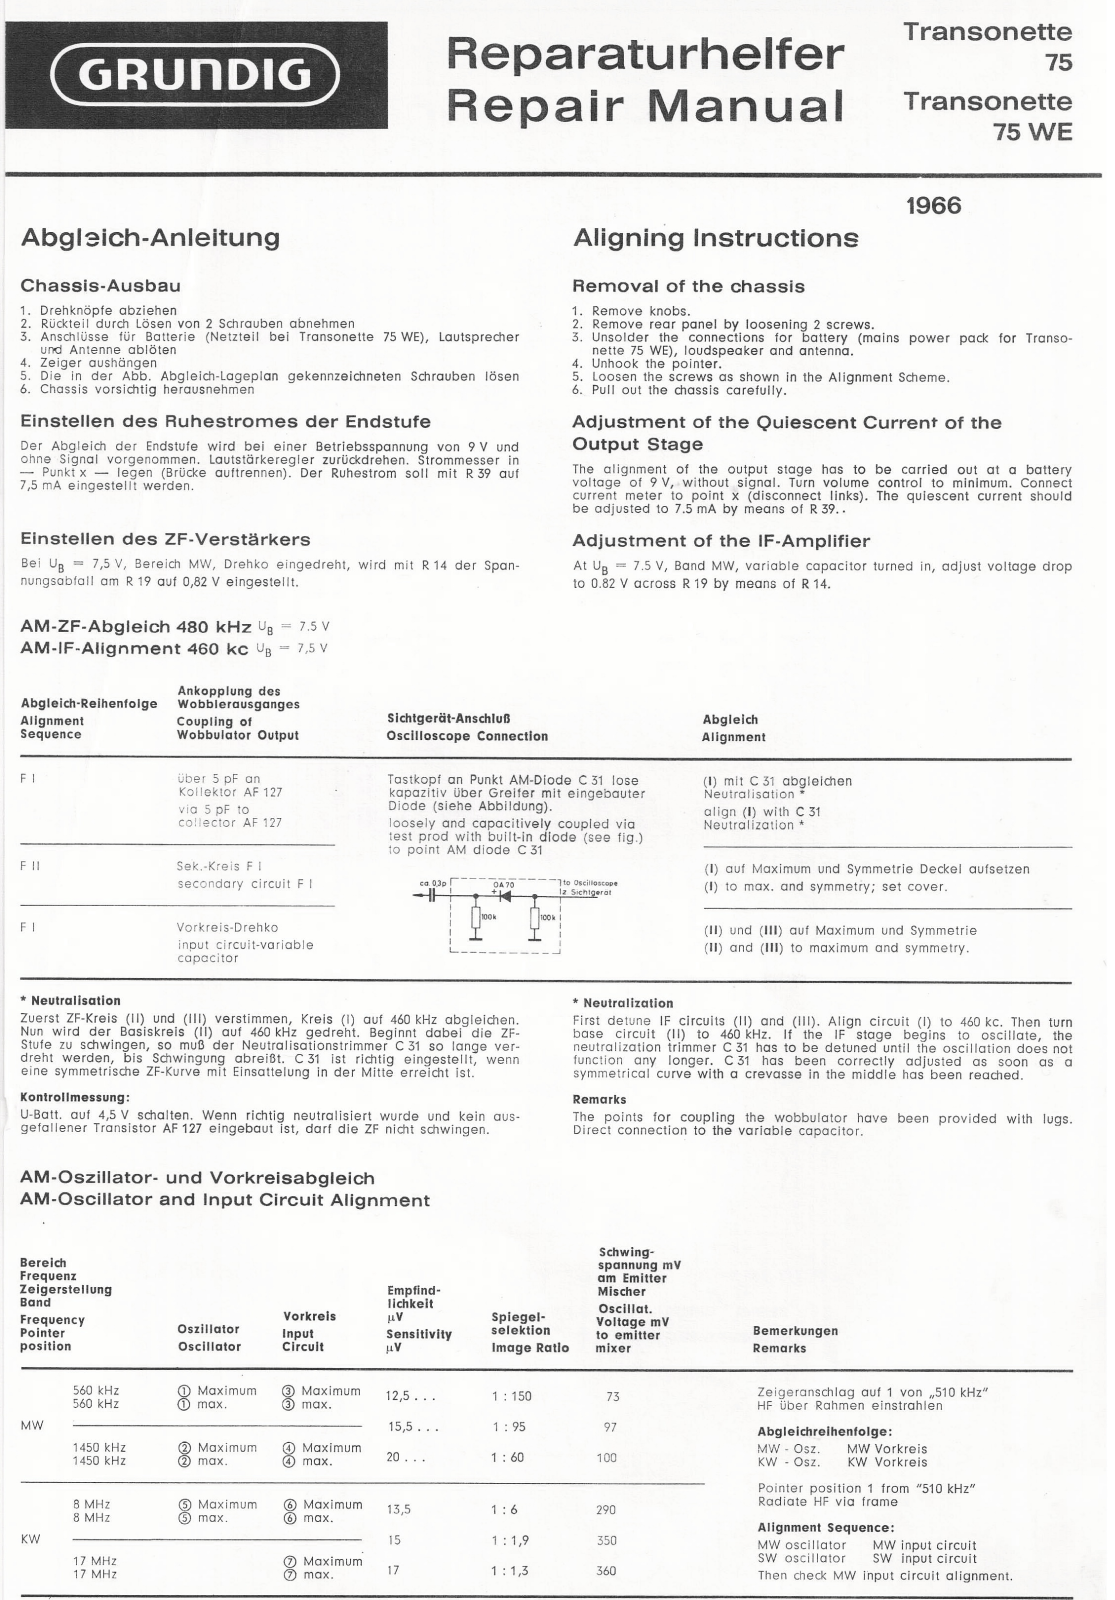 Grundig Transonette-75-WE, Transonette-75 Service Manual